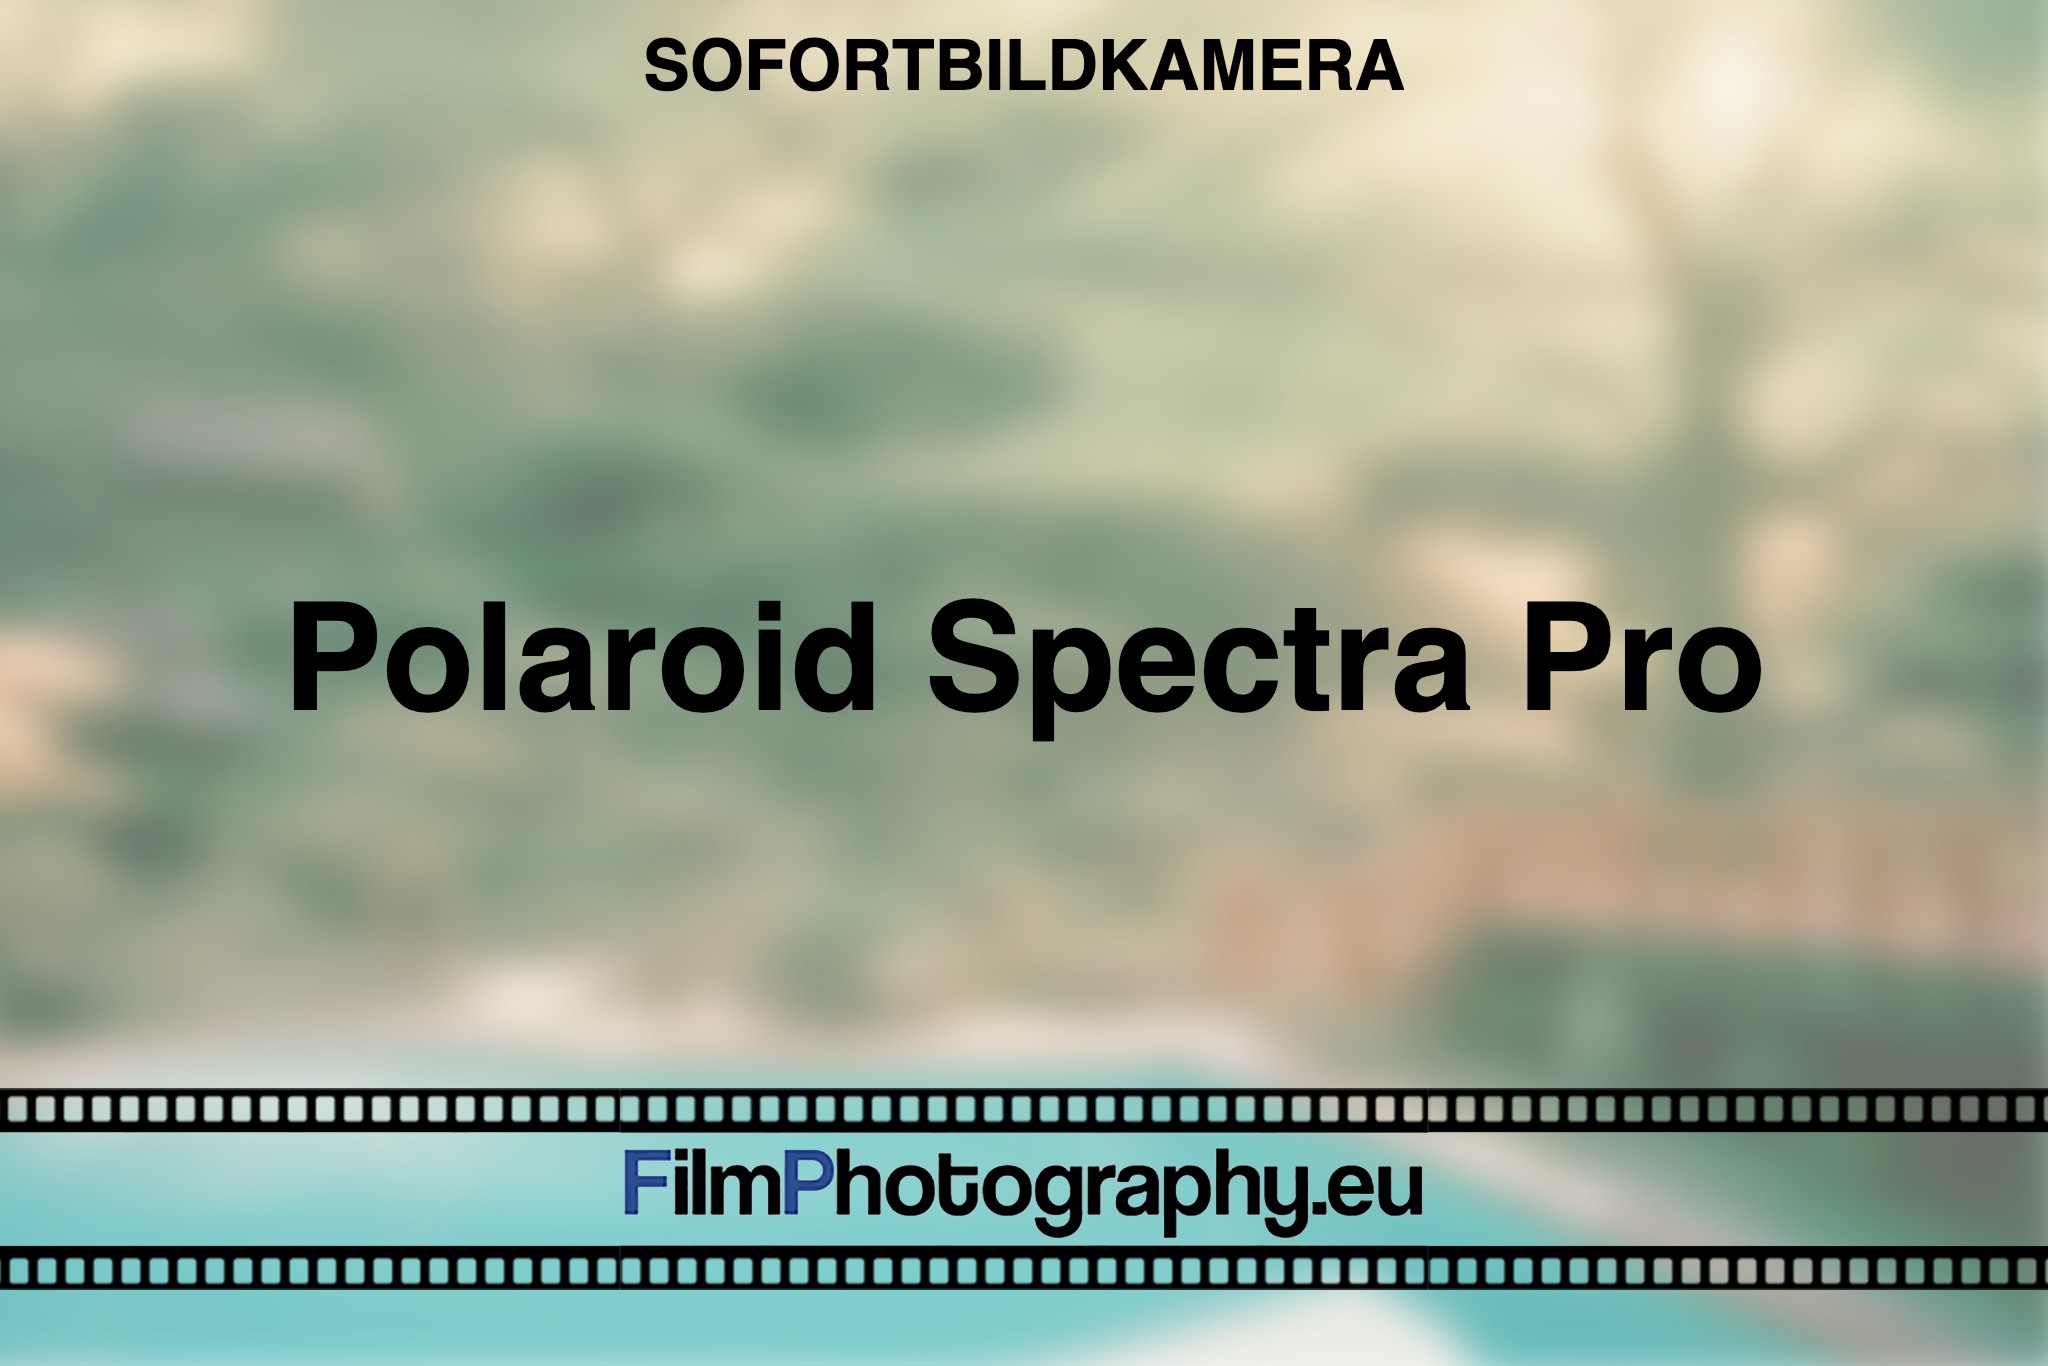 polaroid-spectra-pro-sofortbildkamera-bnv